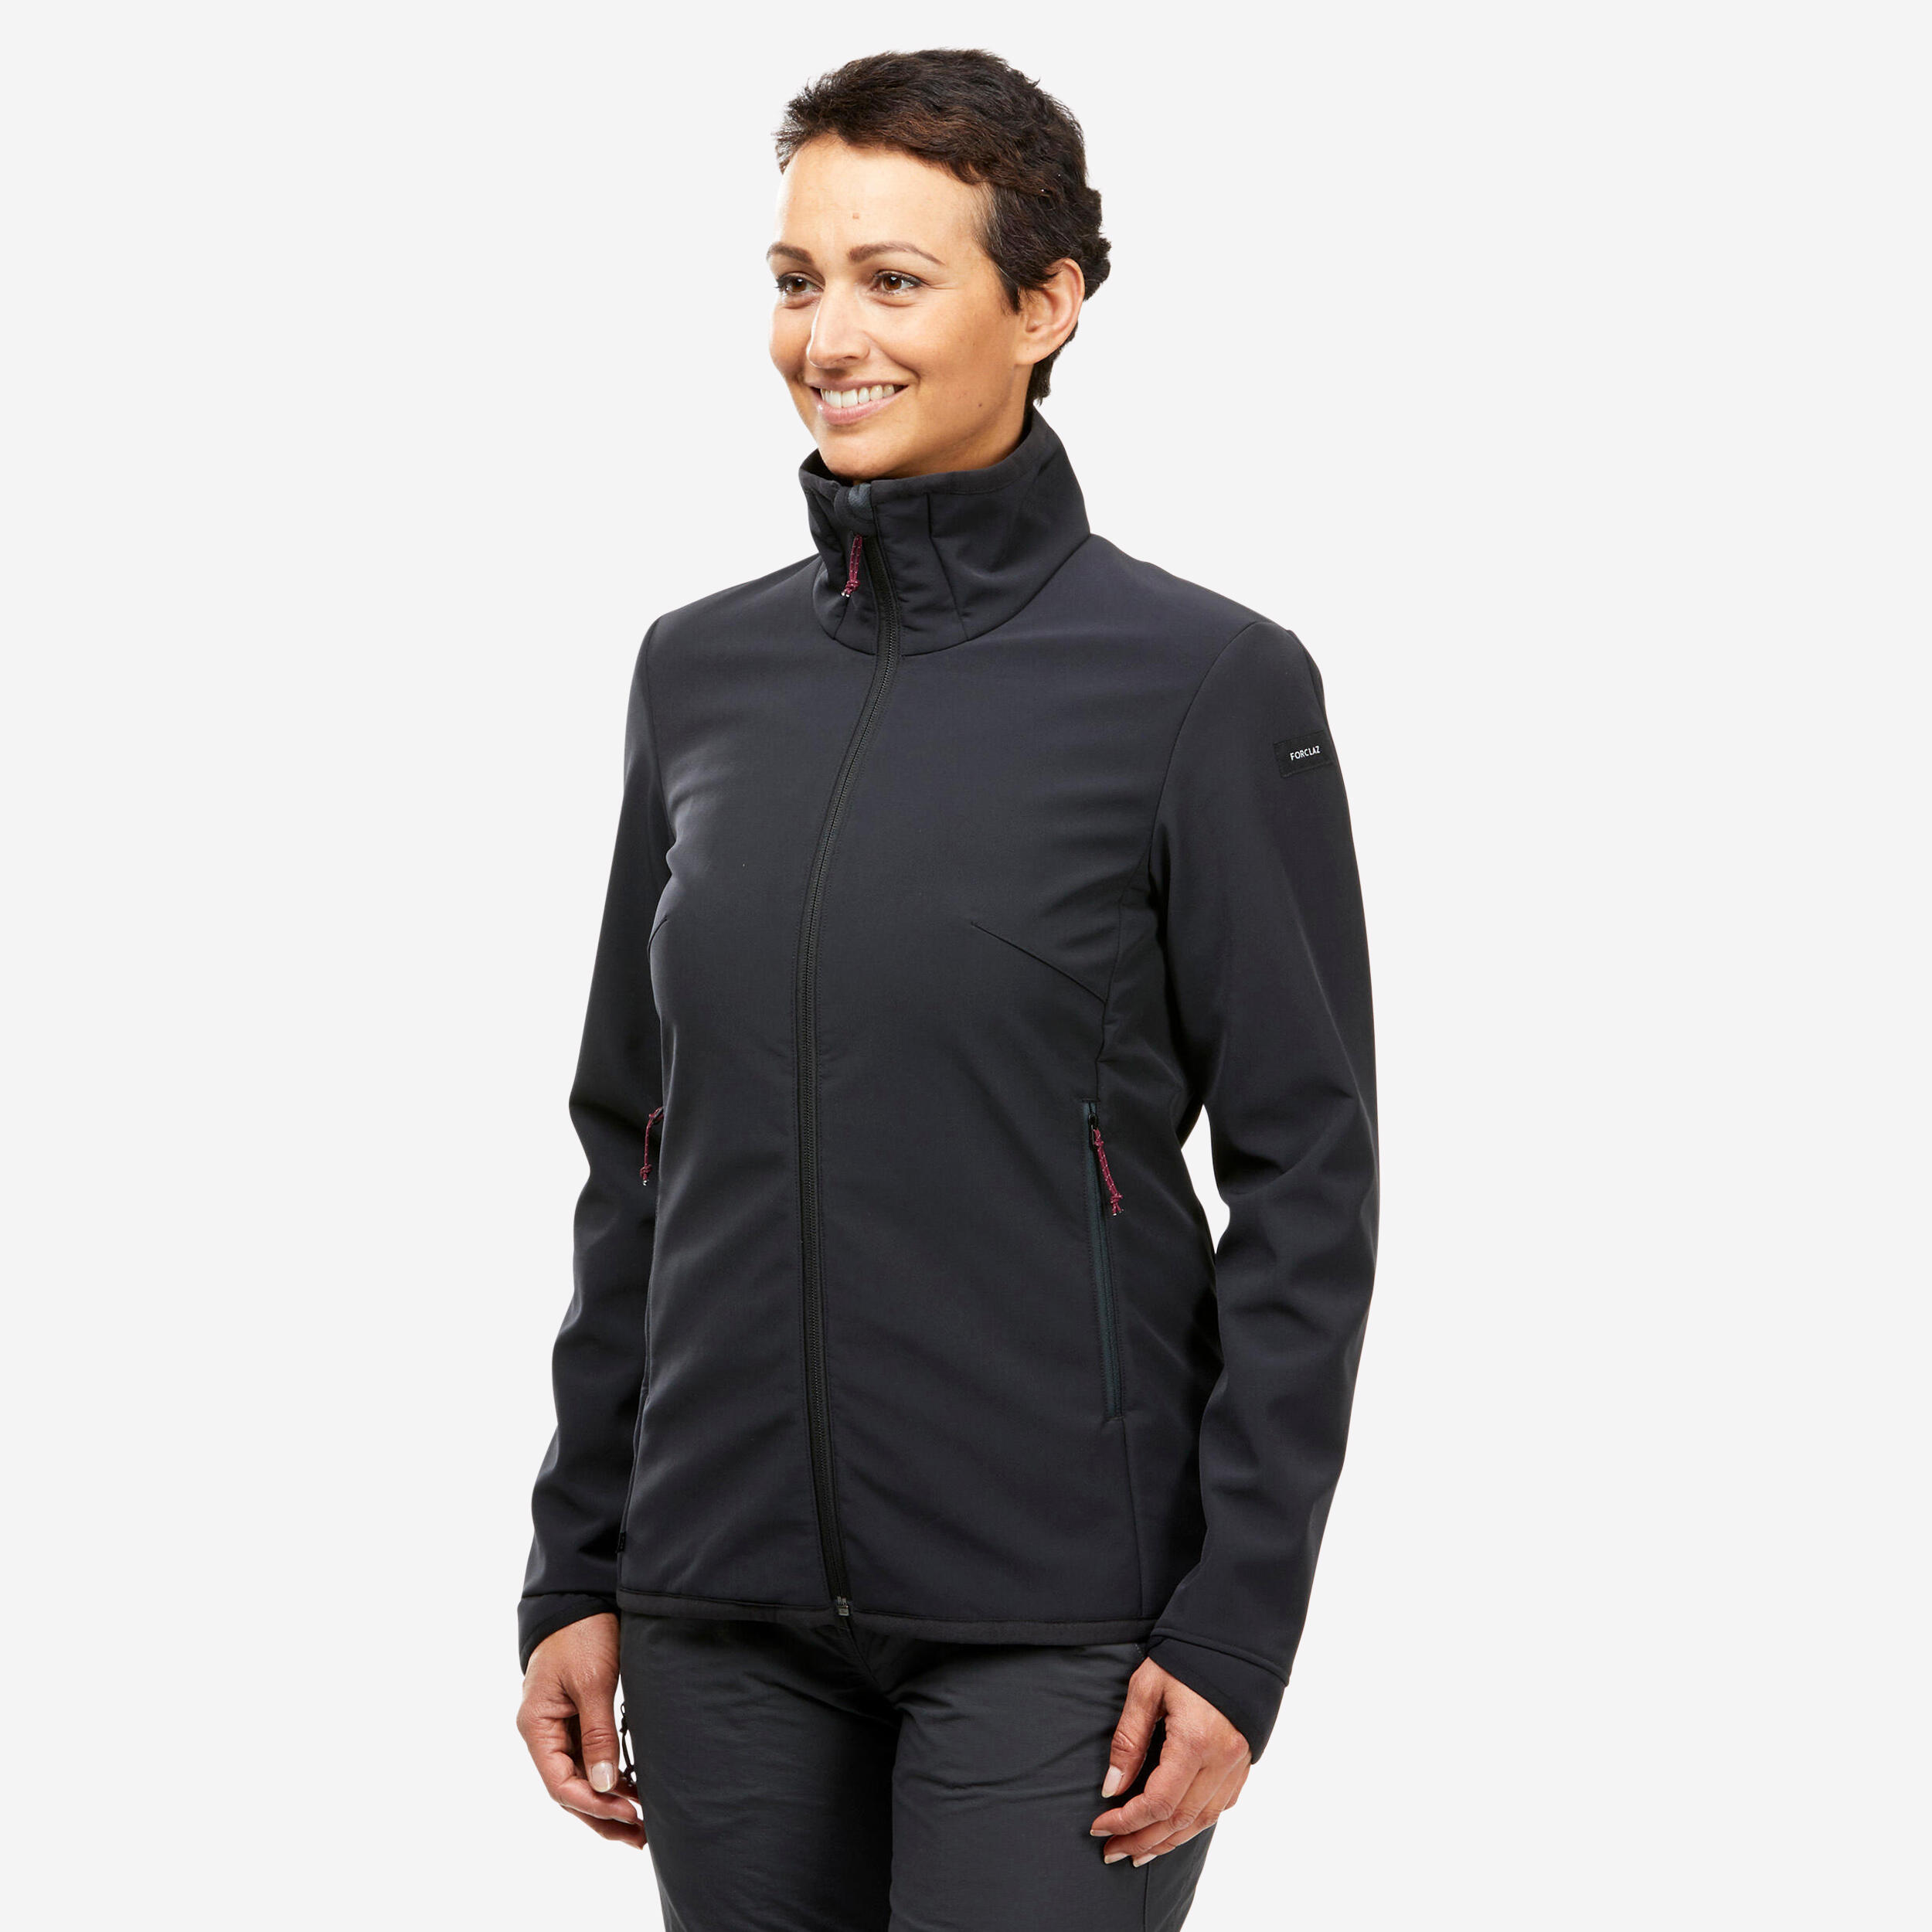 Windbreaker jacket - softshell - warm - MT100 - women’s 1/10